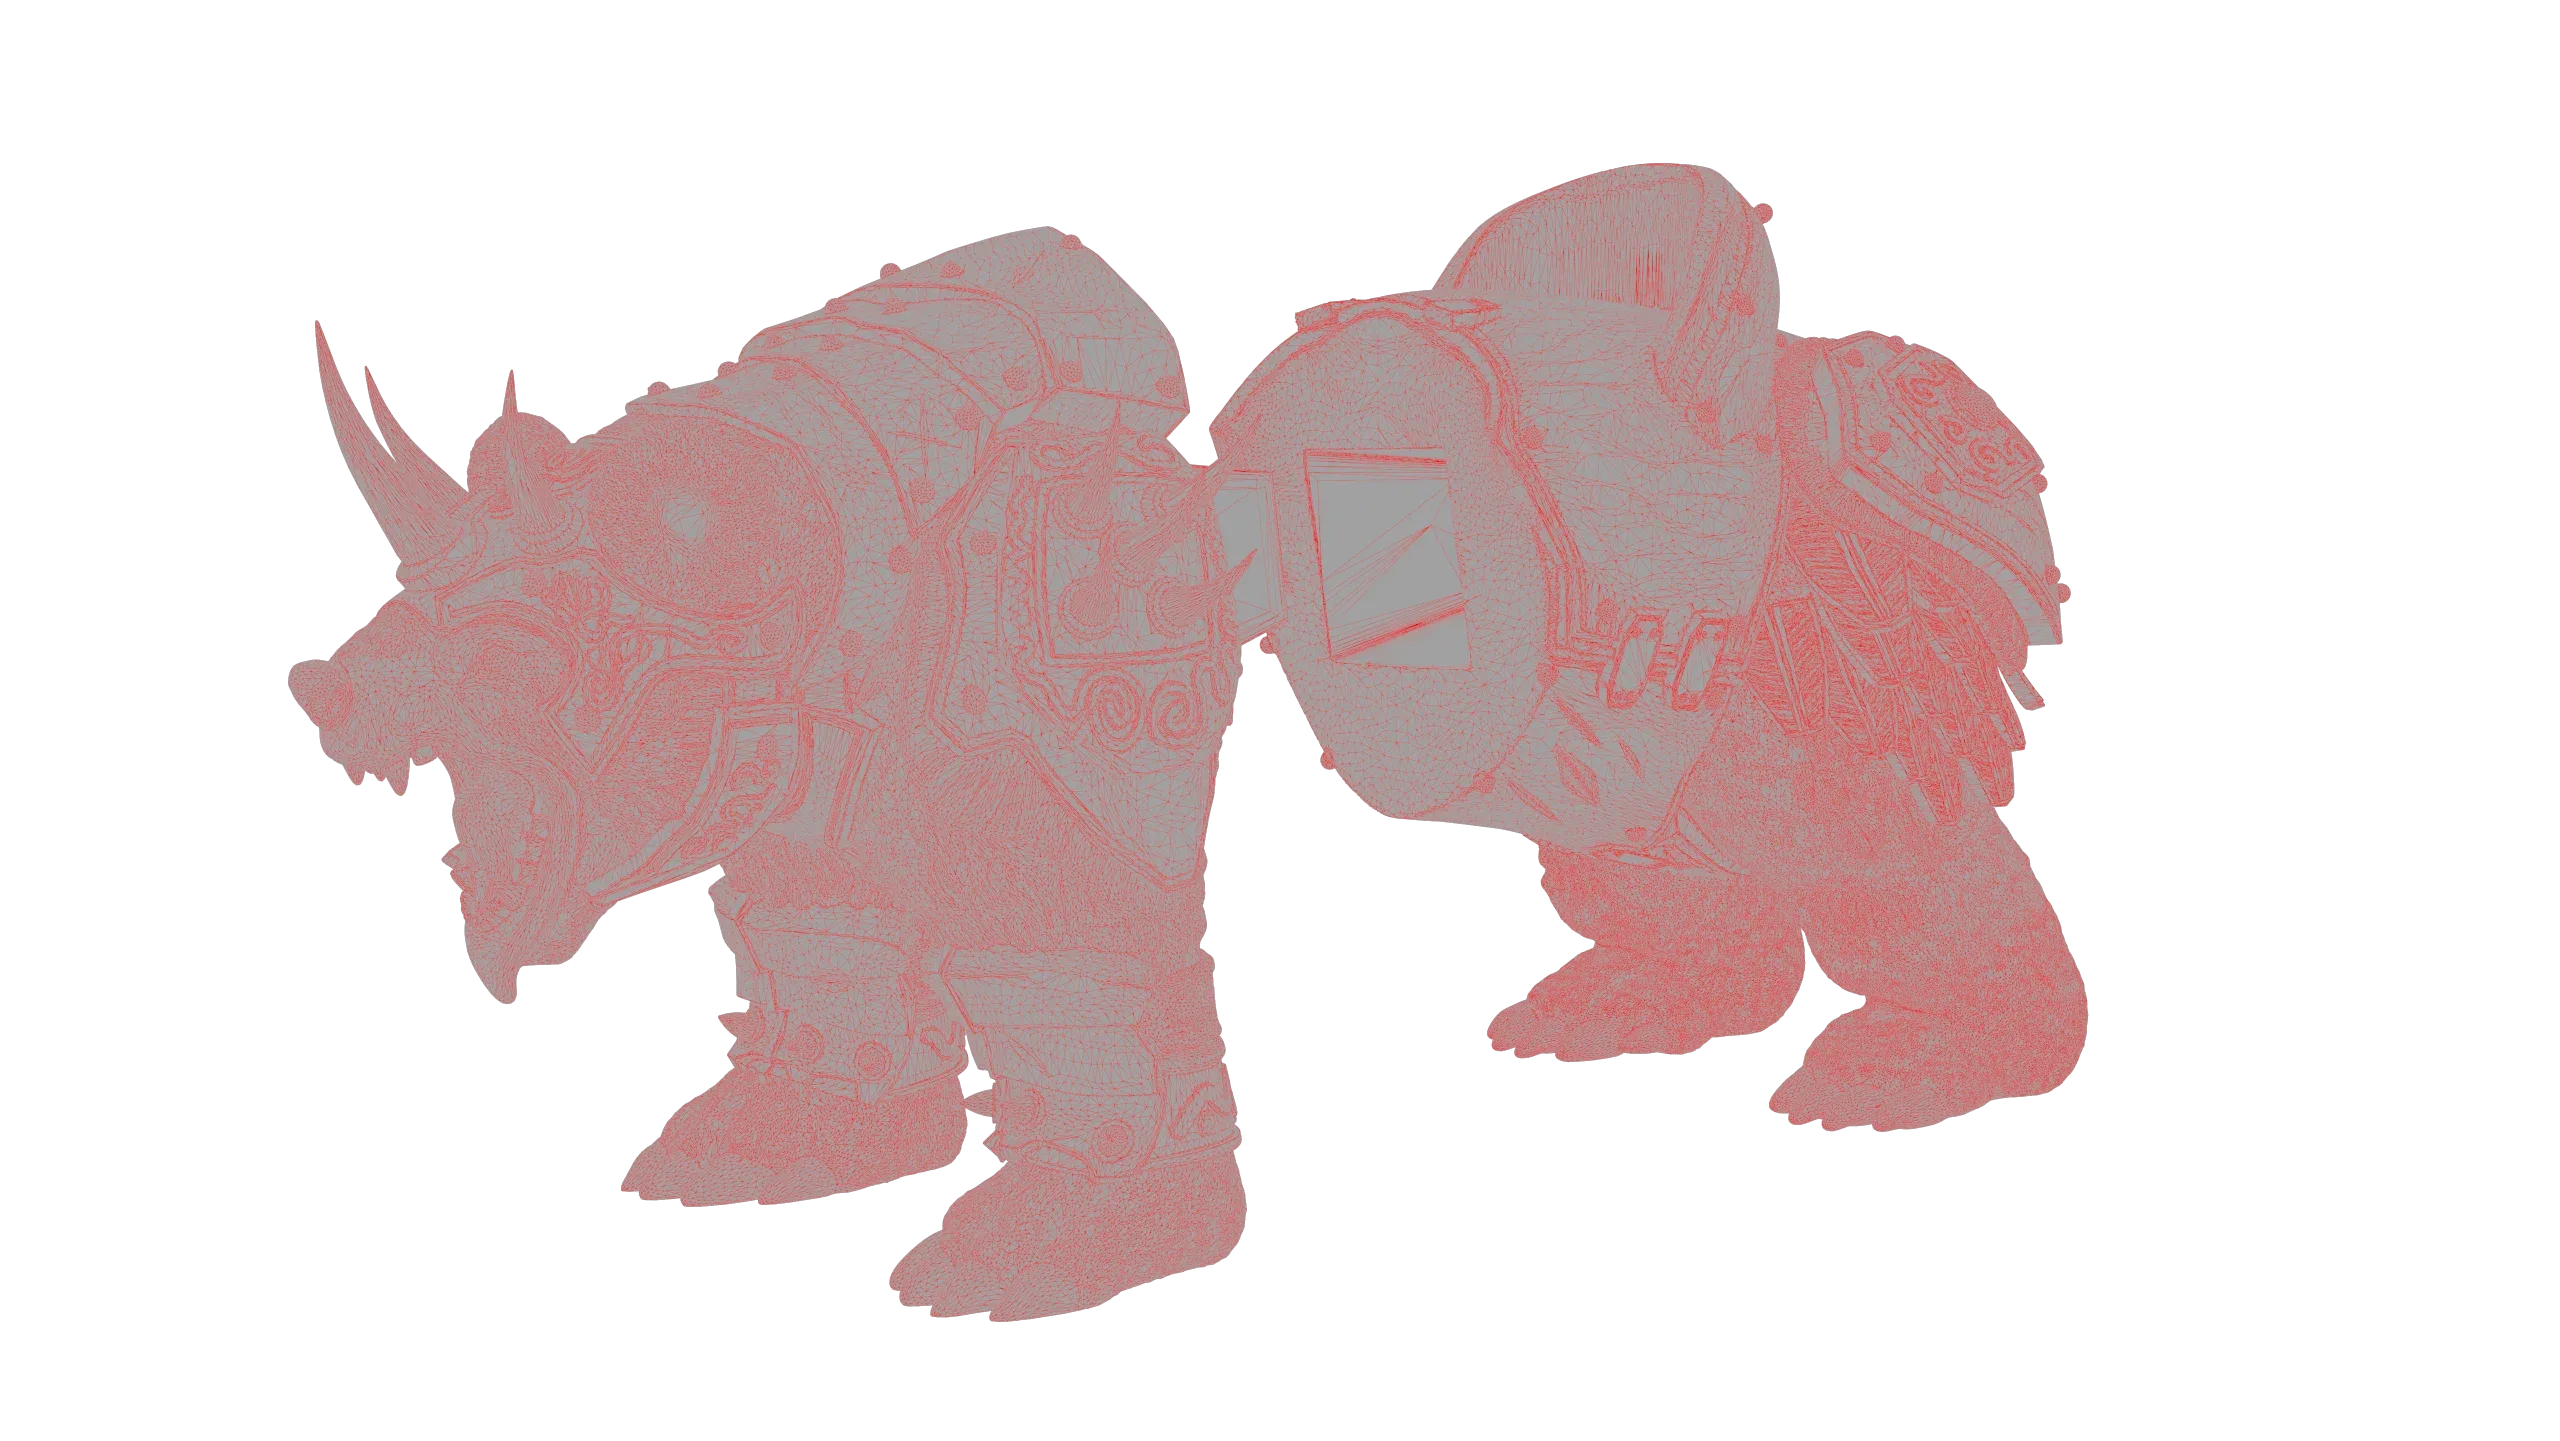 Armoured Bear 3D Print Figurine